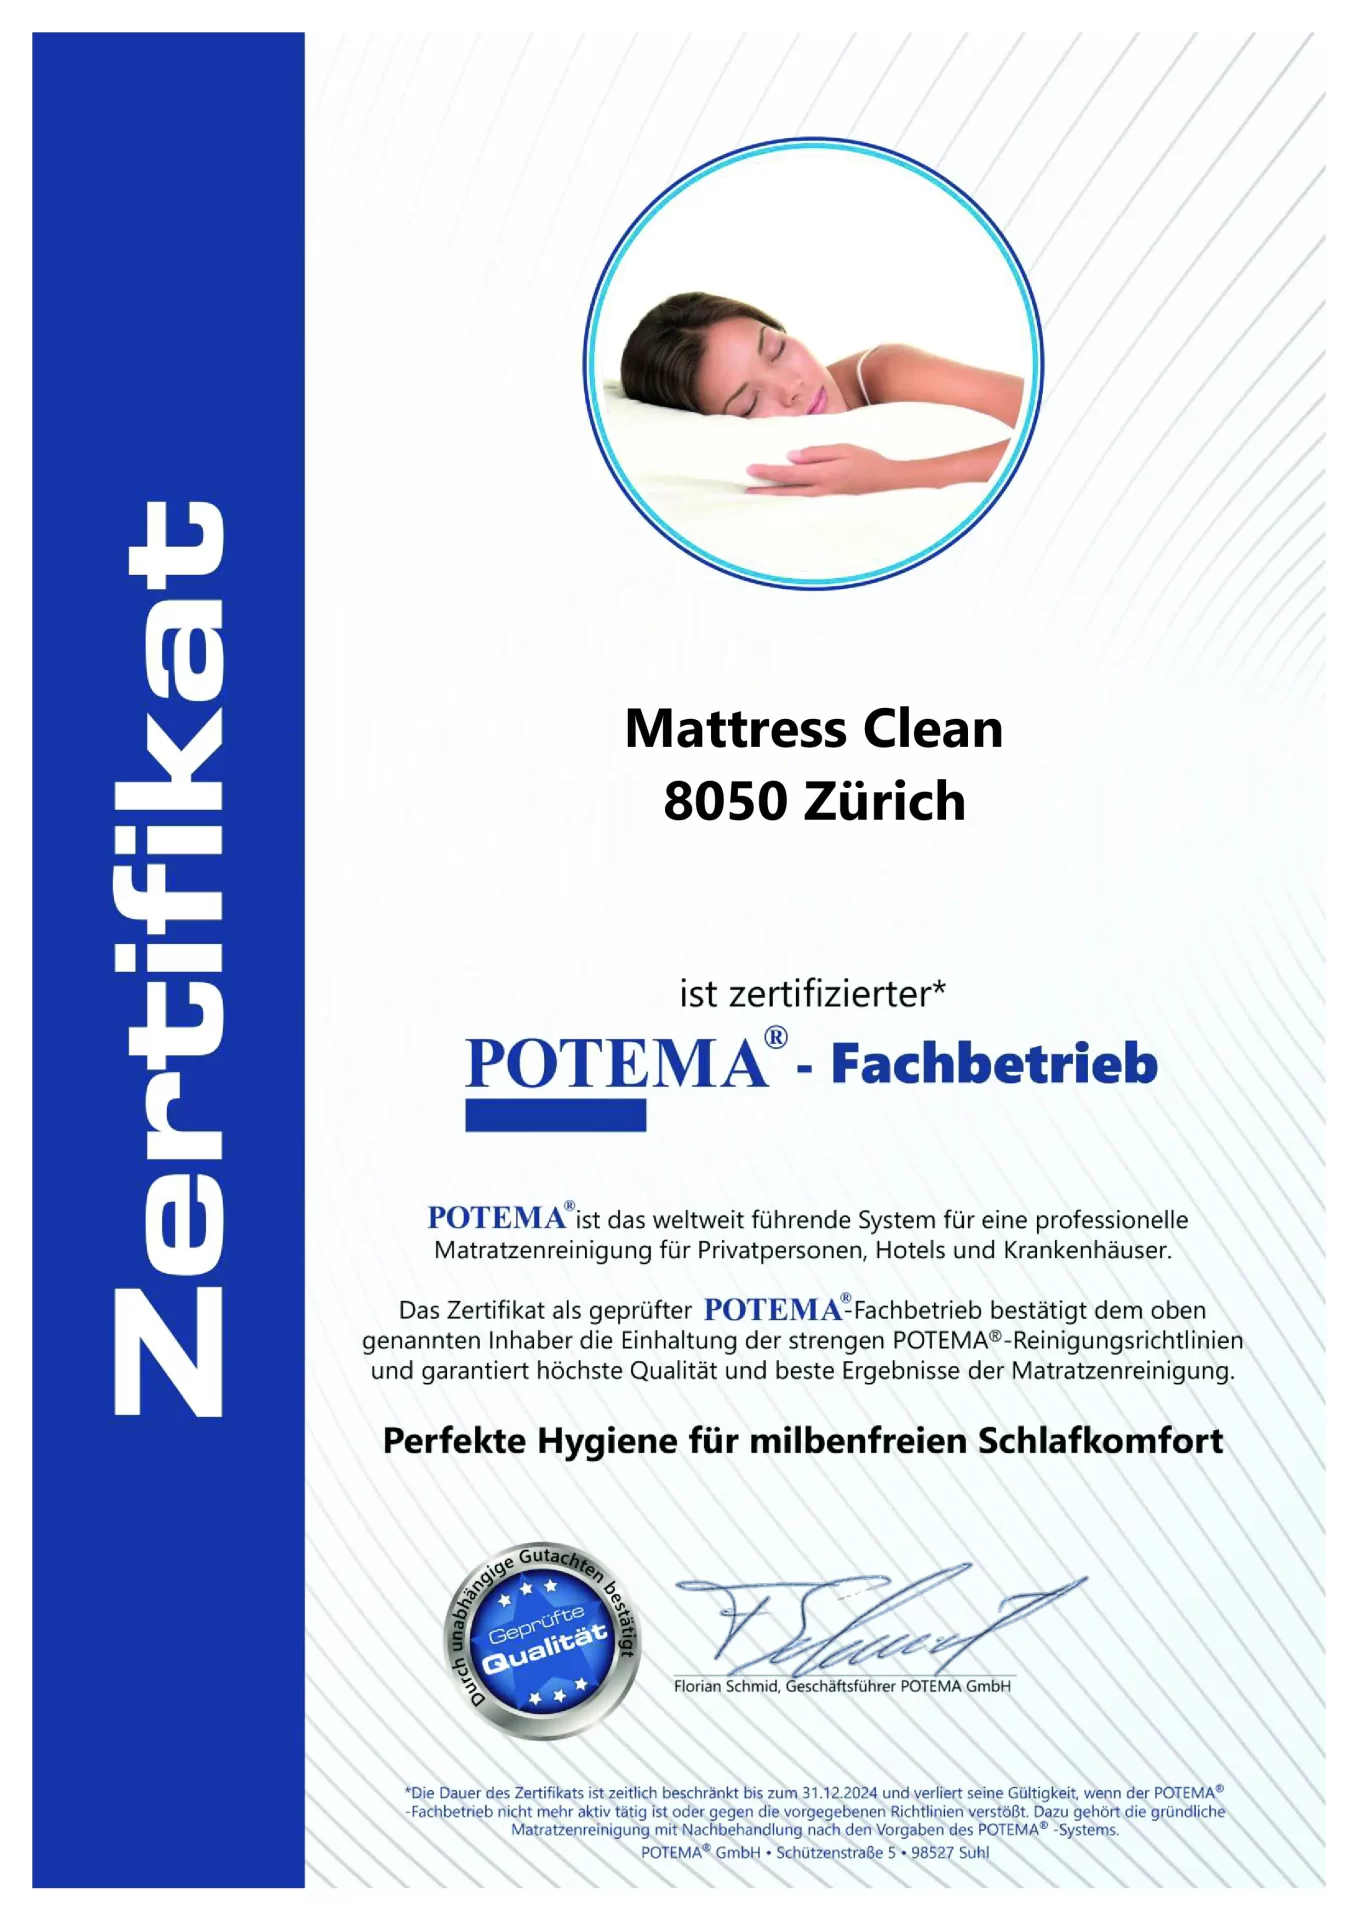 Von Potema zertifiziertes Matratzenreinigungsunternehmen